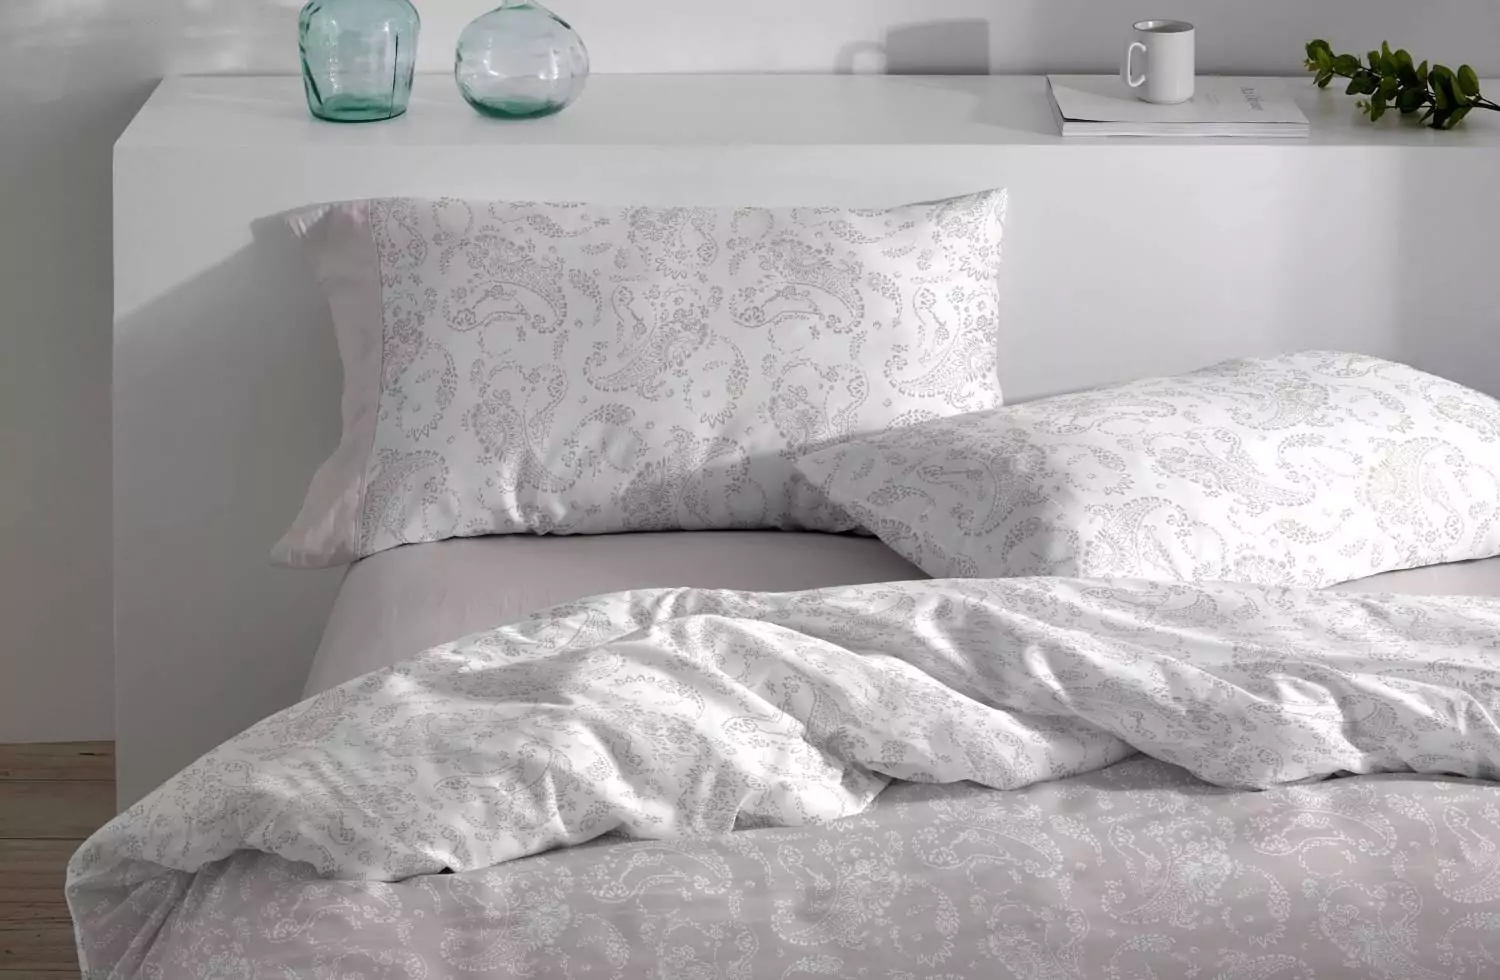 Funda de almohada gris de algodón y poliéster clásica para cama de 90 cm.  Compra mínima